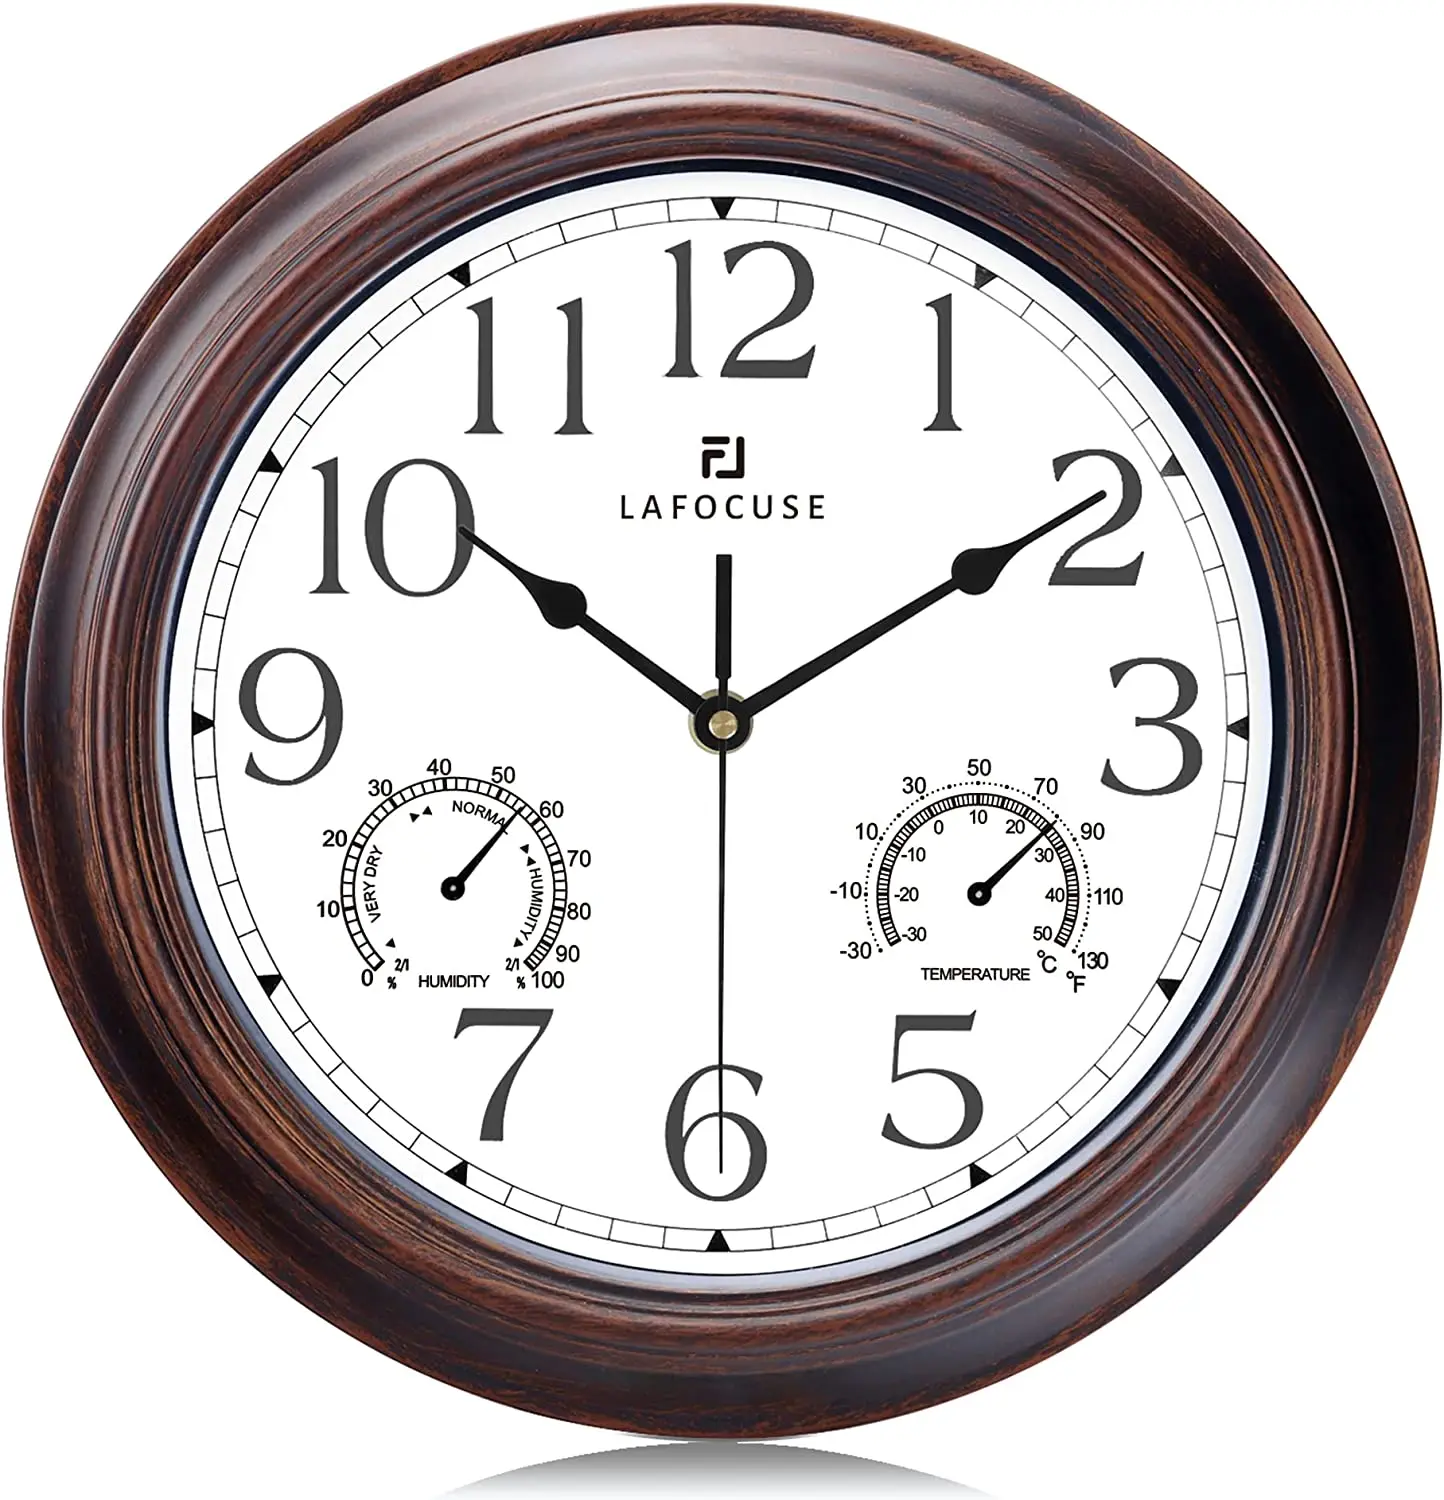 

Reloj de Pared con Termometro e Higrometro Silencioso Vintage 30 cm Reloj de Cuarzo Temperatura Humedad Color Caoba para Cocina